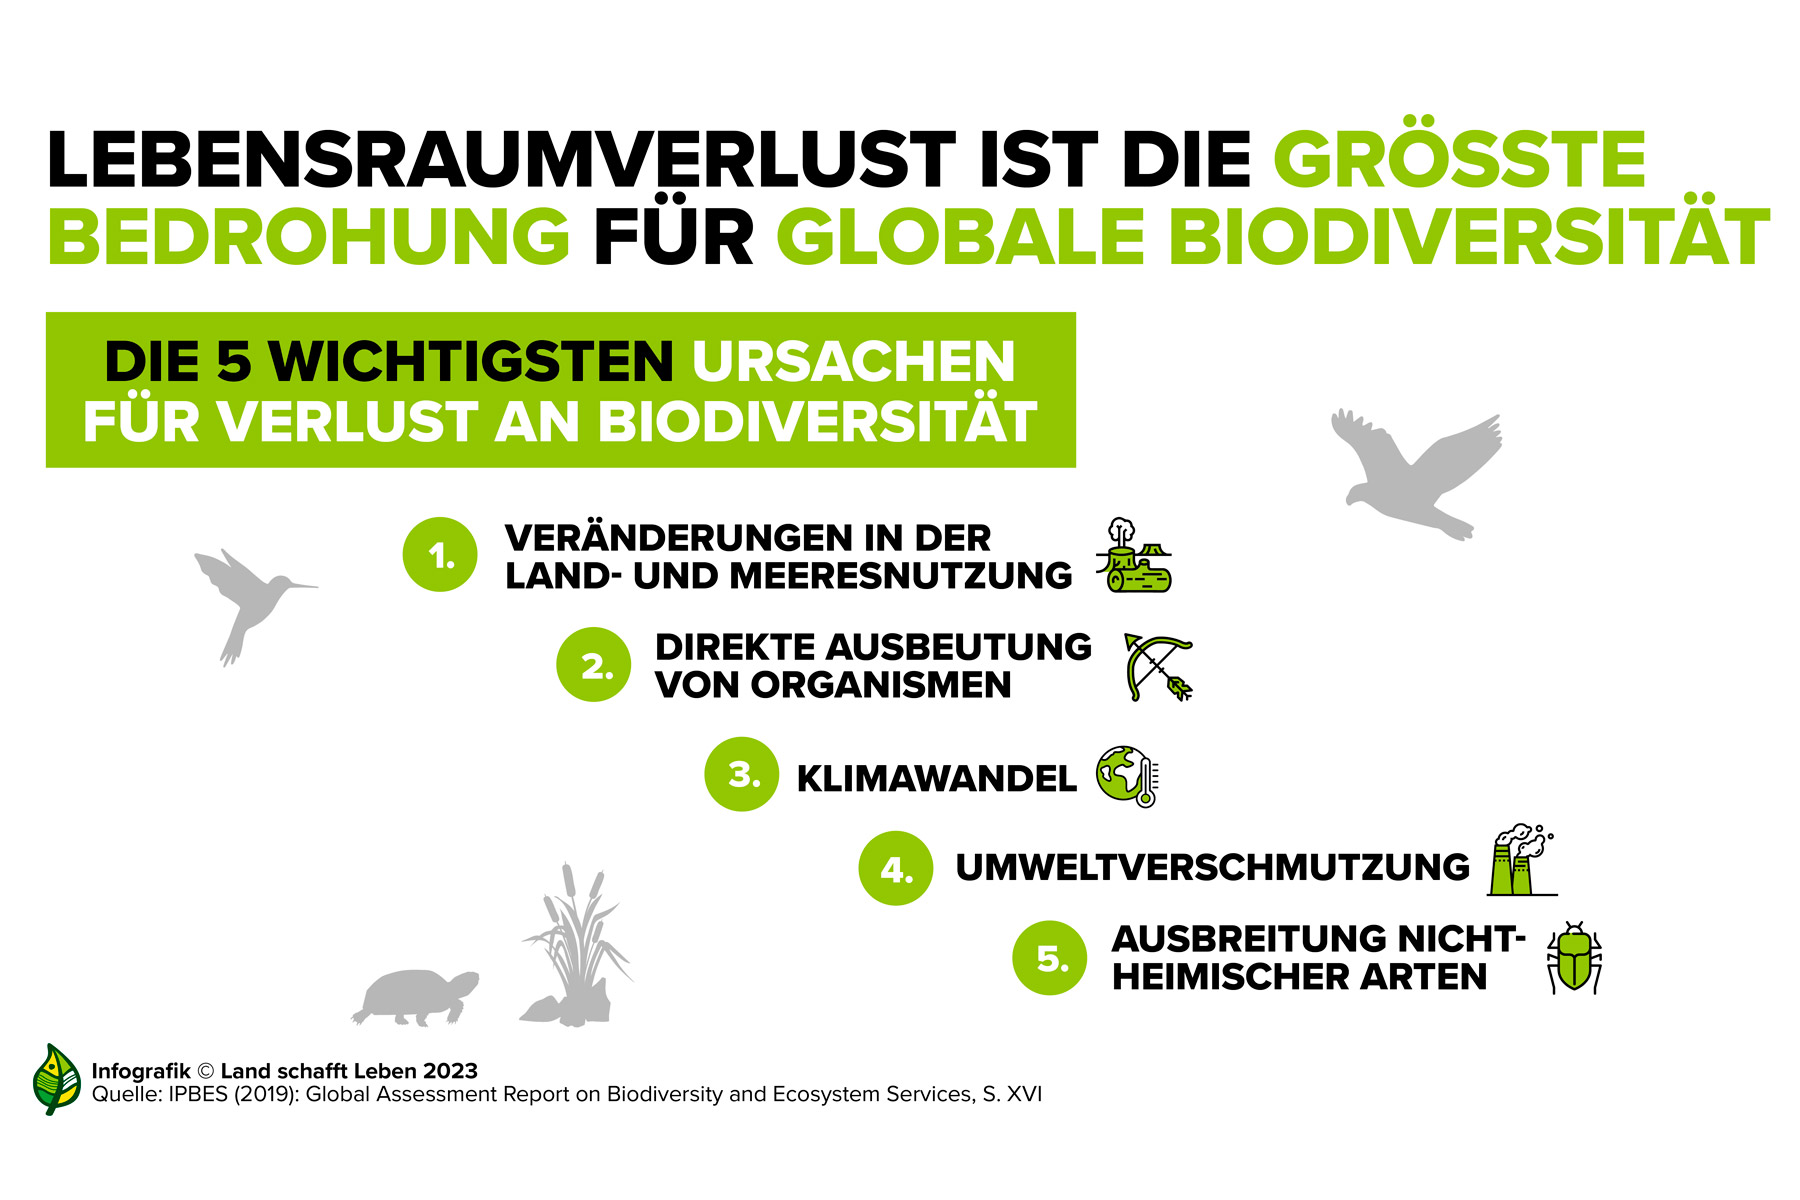 Lebensraumverlust ist die größte Bedrohung für globale Biodiversität